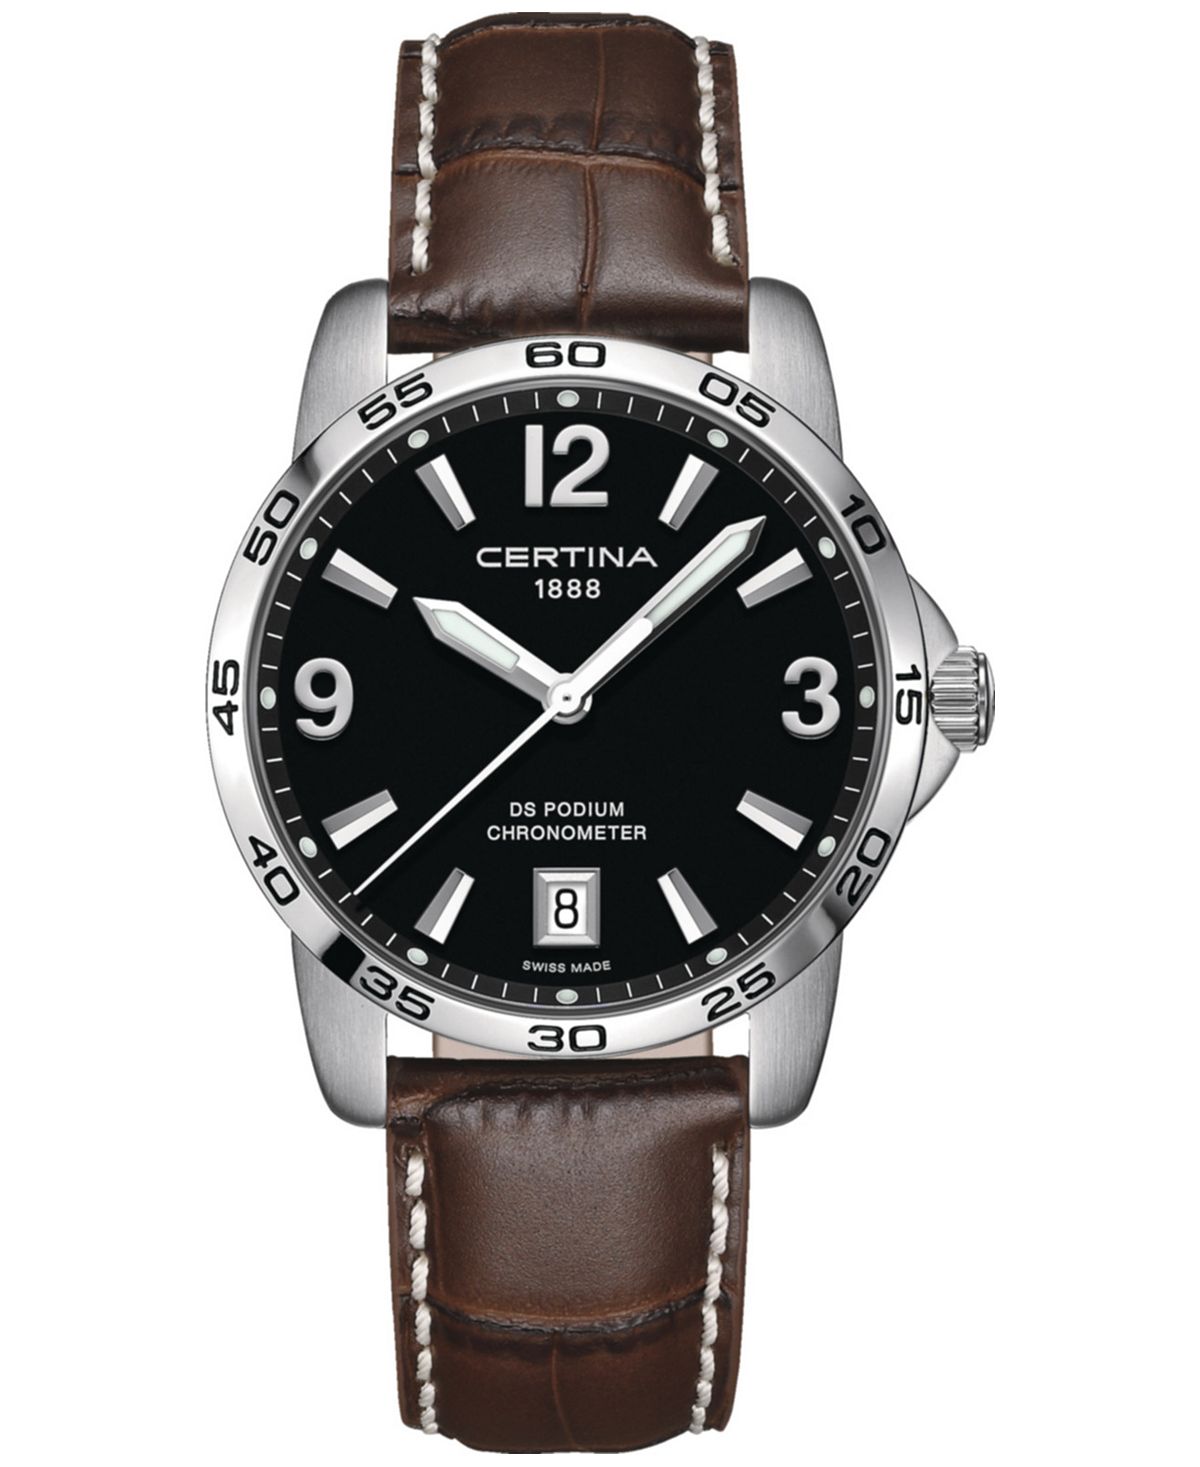 Мужские швейцарские часы DS Podium с коричневым кожаным ремешком, 40 мм Certina certina certina ds podium chronograph 1 10 sec c0344171109700